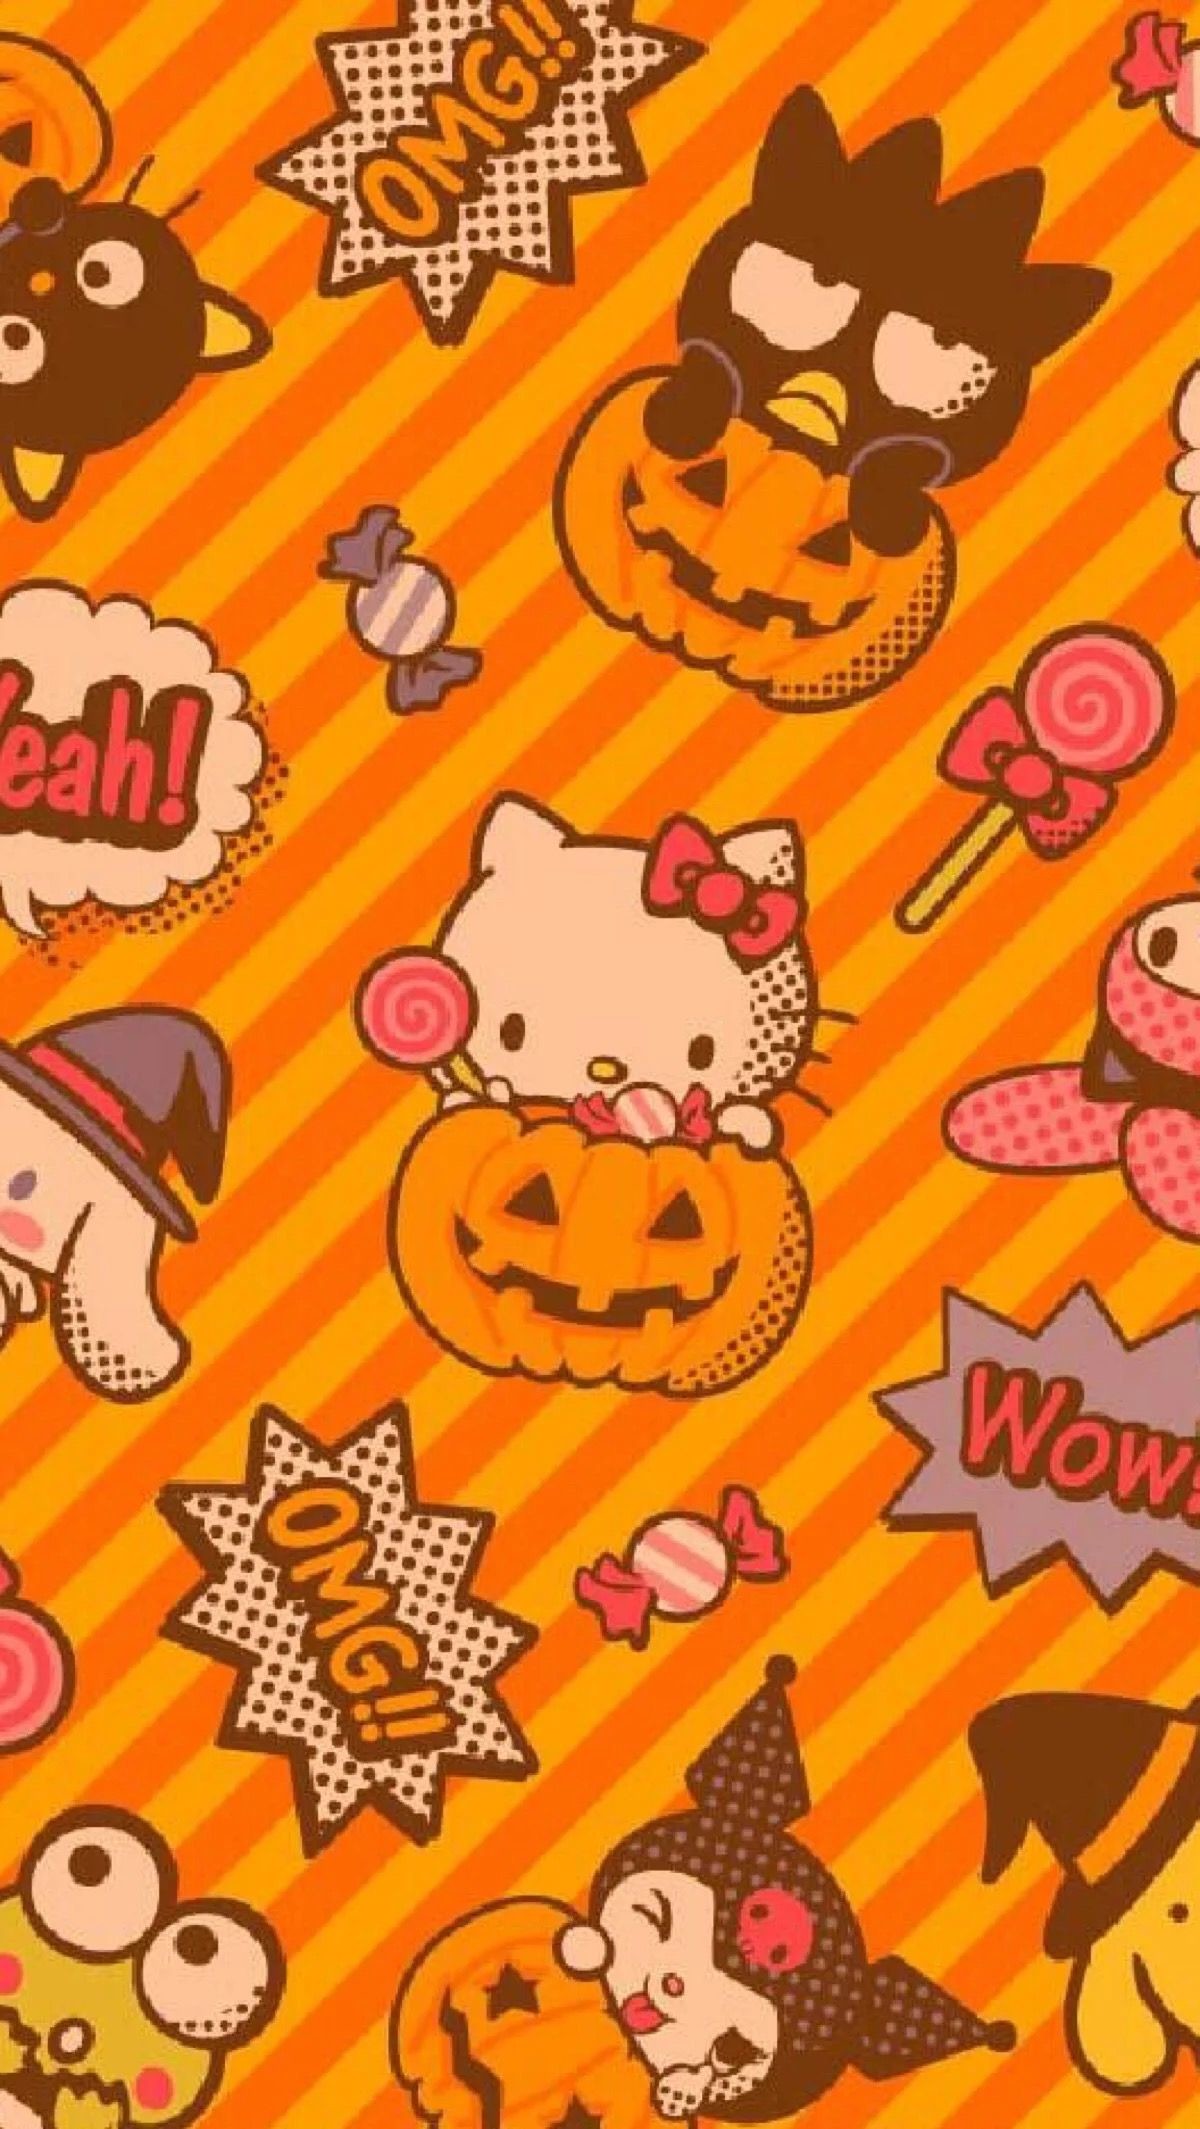 cupcake   on Twitter halloween themed hello kitty  sanrio wallpapers  lt3 httpstco8nIGEhYDTa  Twitter